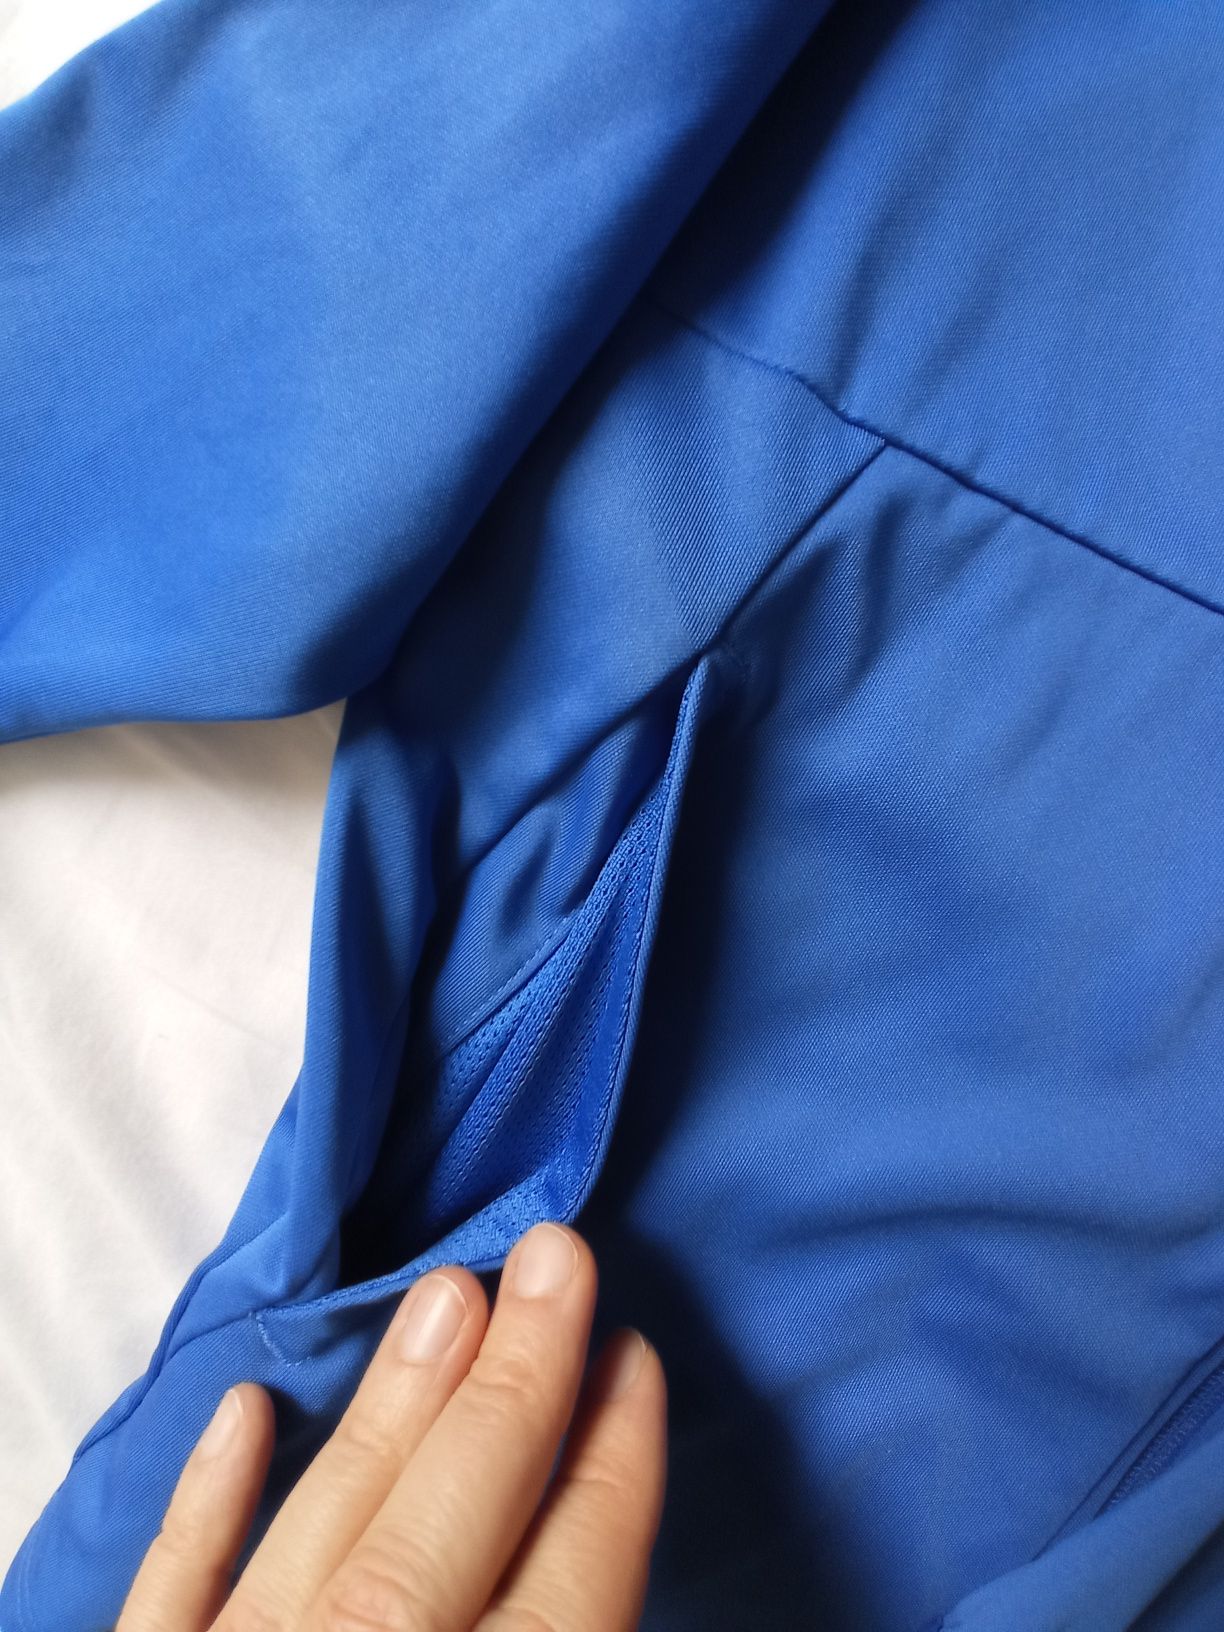 Bluza Nike Dry-fit Olimpic rozmiar XL